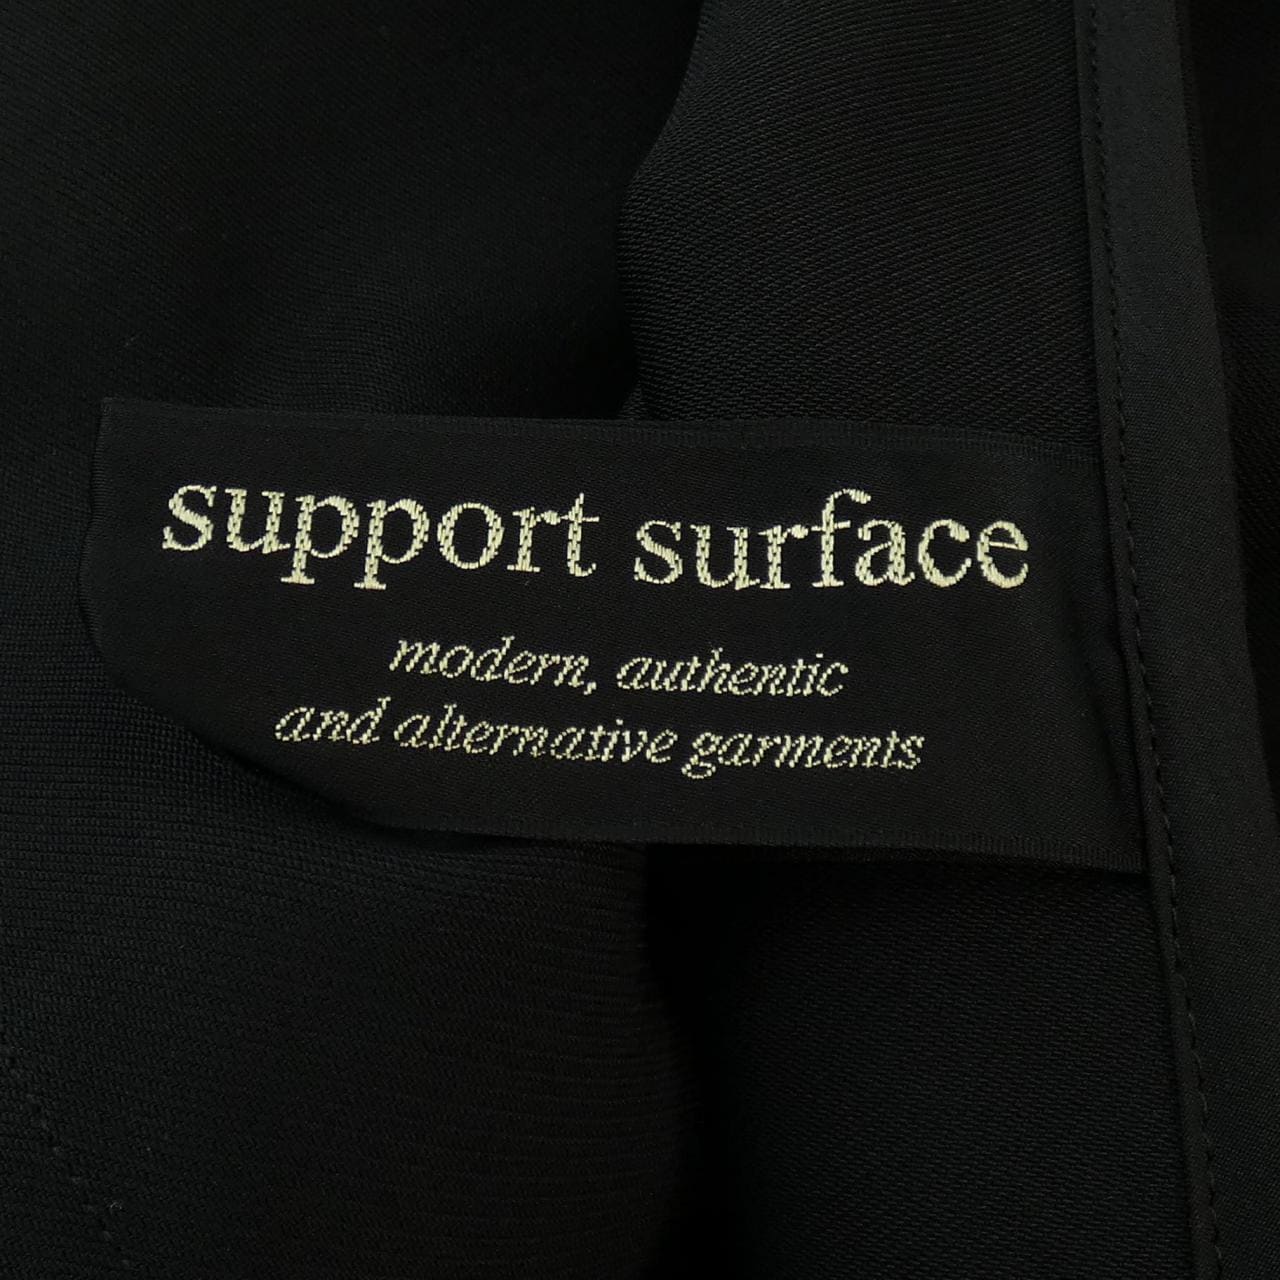 サポートサーフェス support surface ワンピース